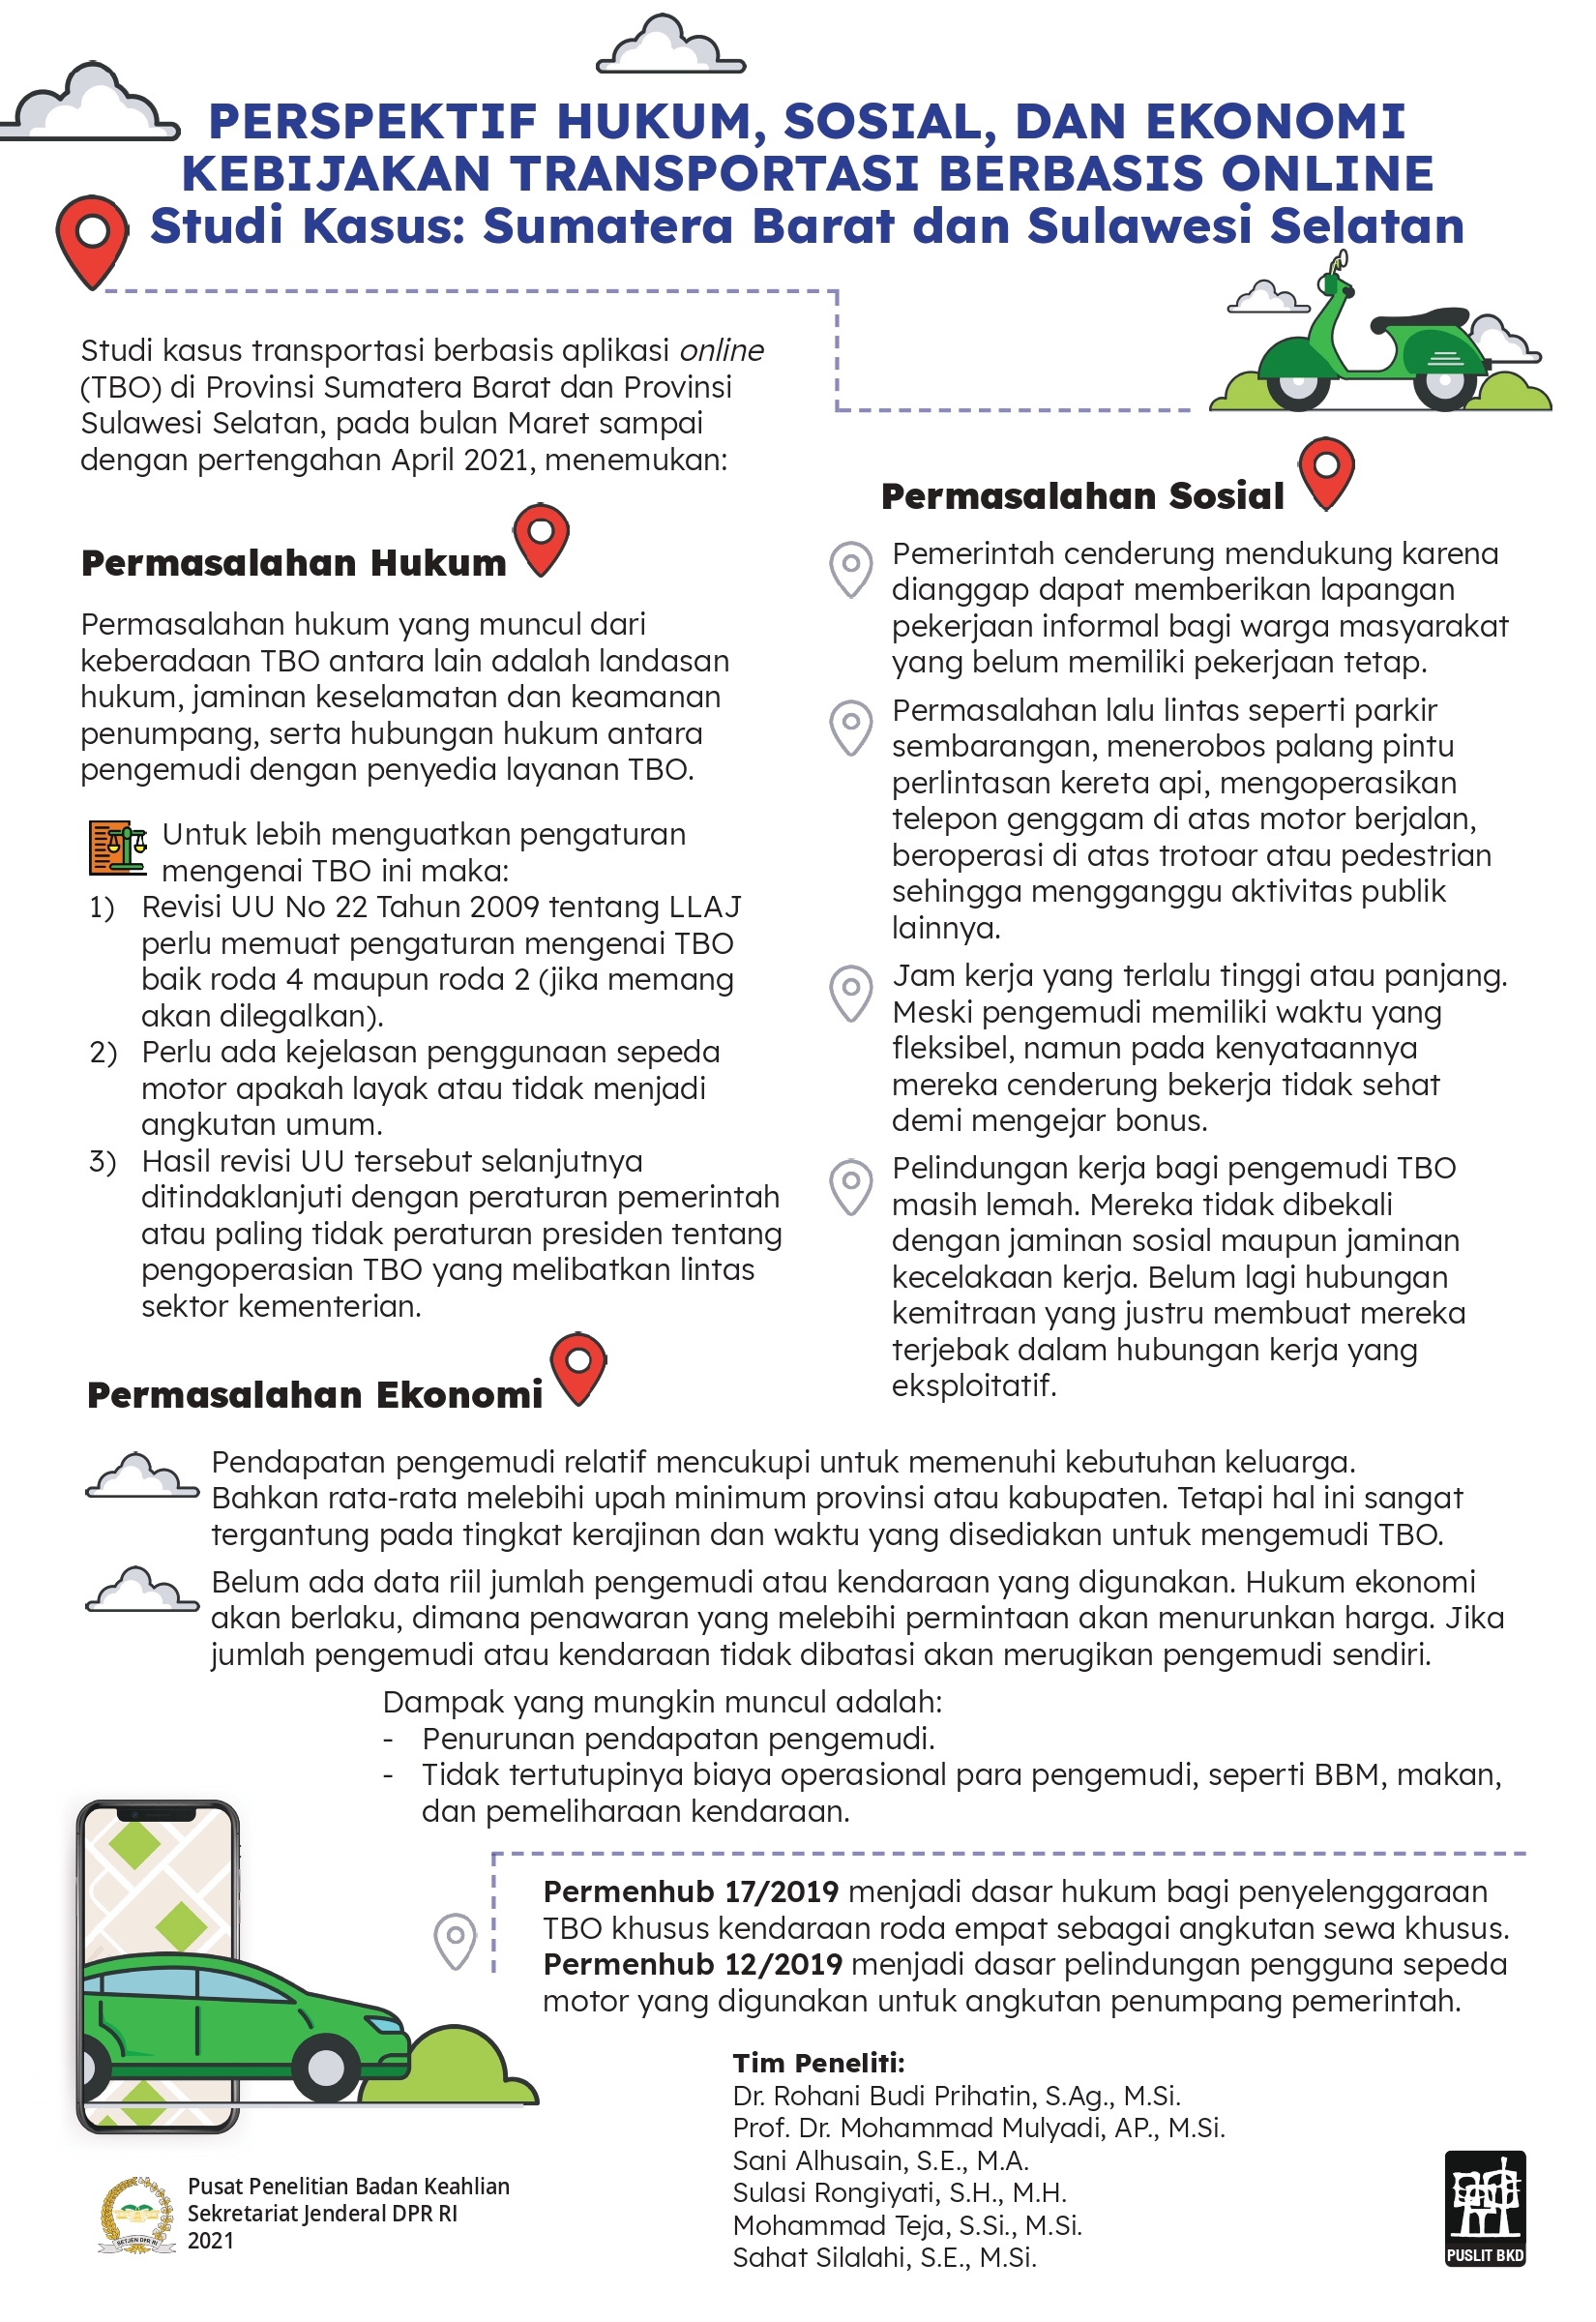 Perspektif Hukum, Sosial, dan Ekonomi Kebijakan Transportasi Berbasis Online (Studi Kasus: Sumatera Barat dan Sulawesi Selatan)